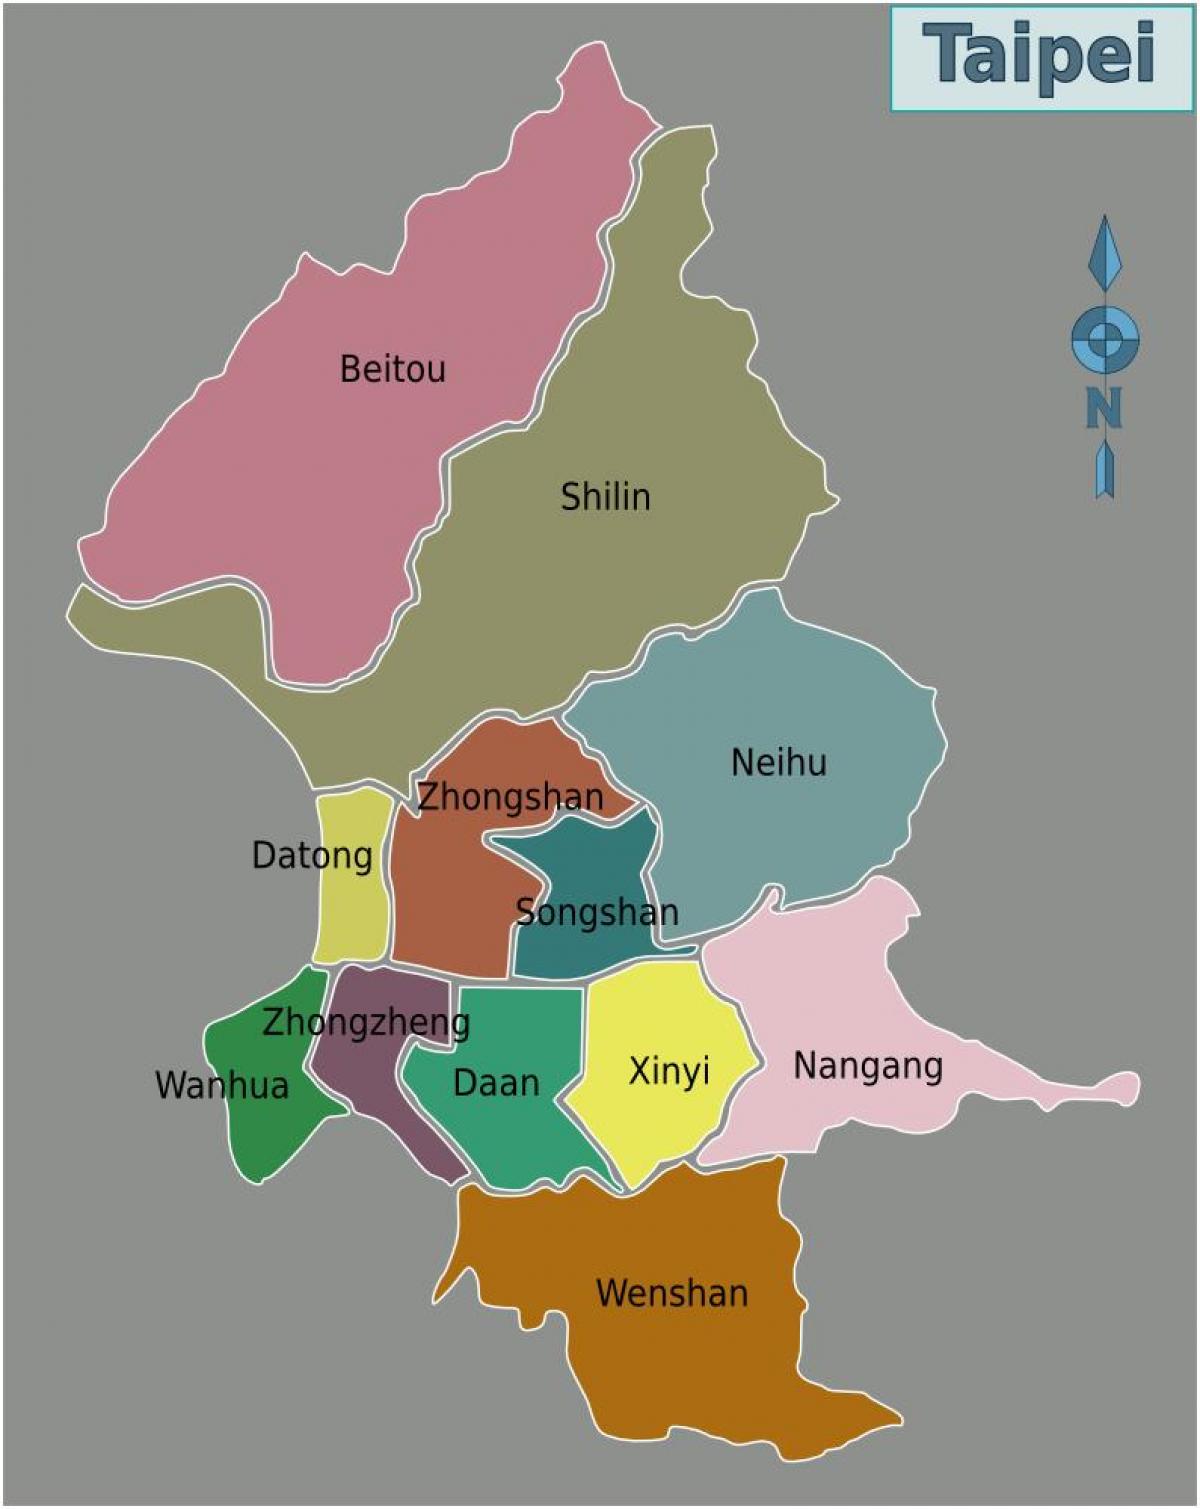 Taipei city-distriktet kart